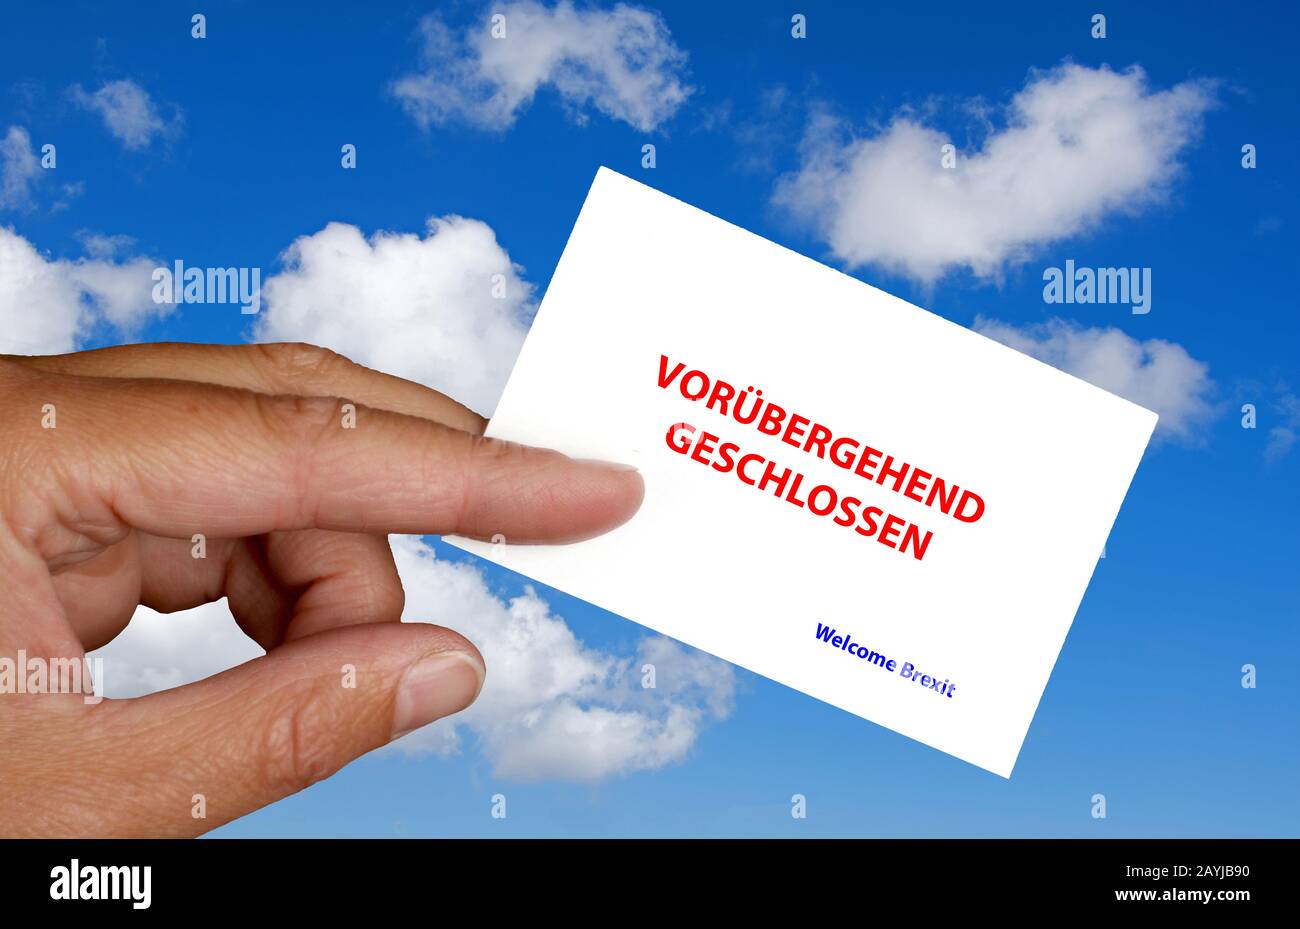 Mano contro il cielo blu che tiene carta scritta vorruebergehend geschlossen, temporaneamente chiuso, vacanza forzata, Welcome Brexit, Germania Foto Stock